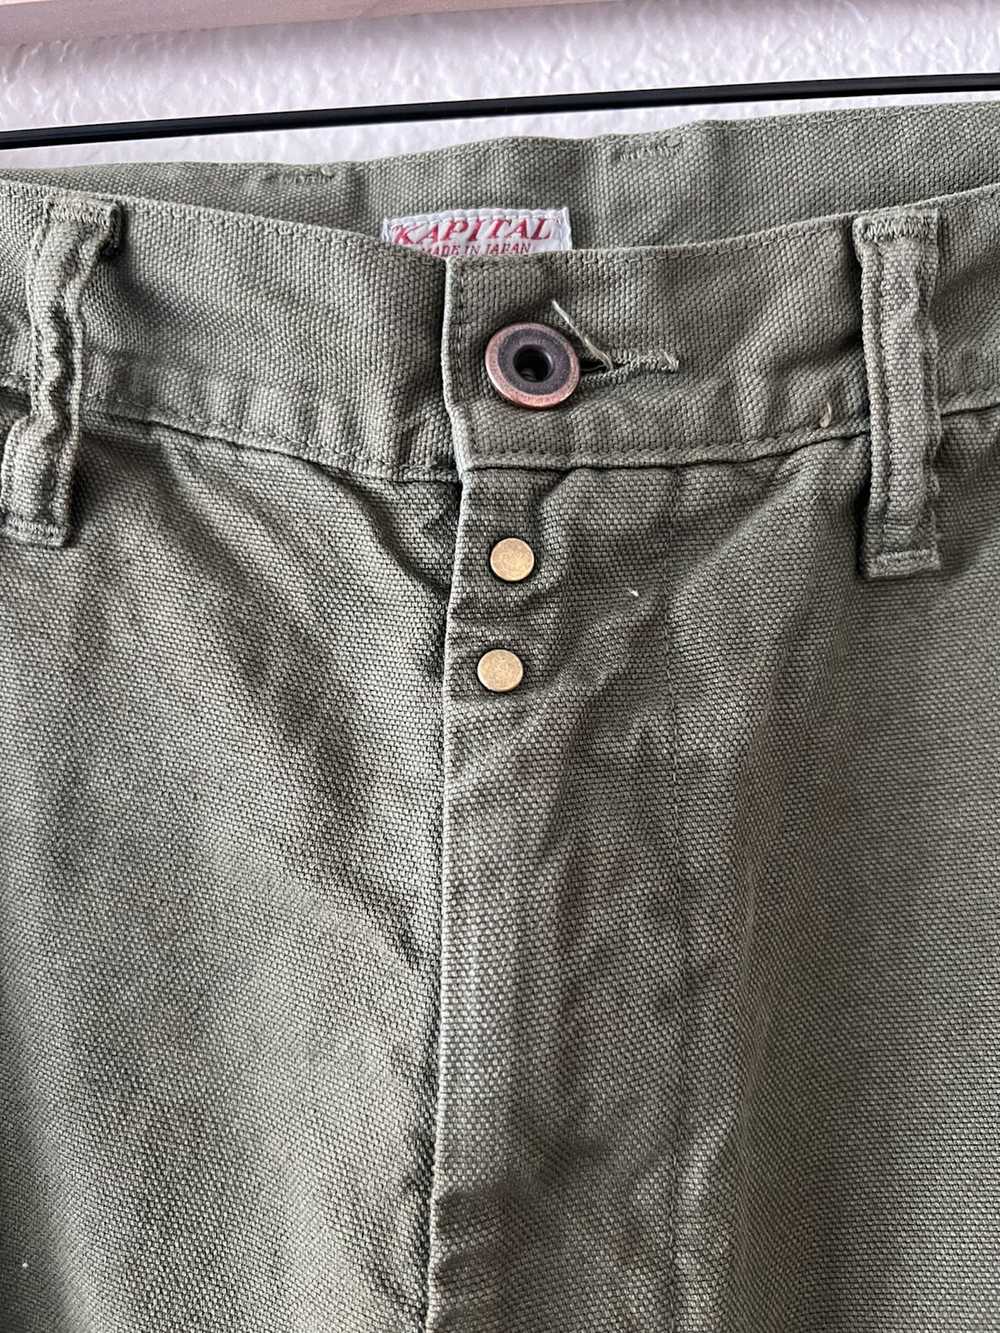 Kapital Kapital “Ringoman” Cargo Pants - image 3